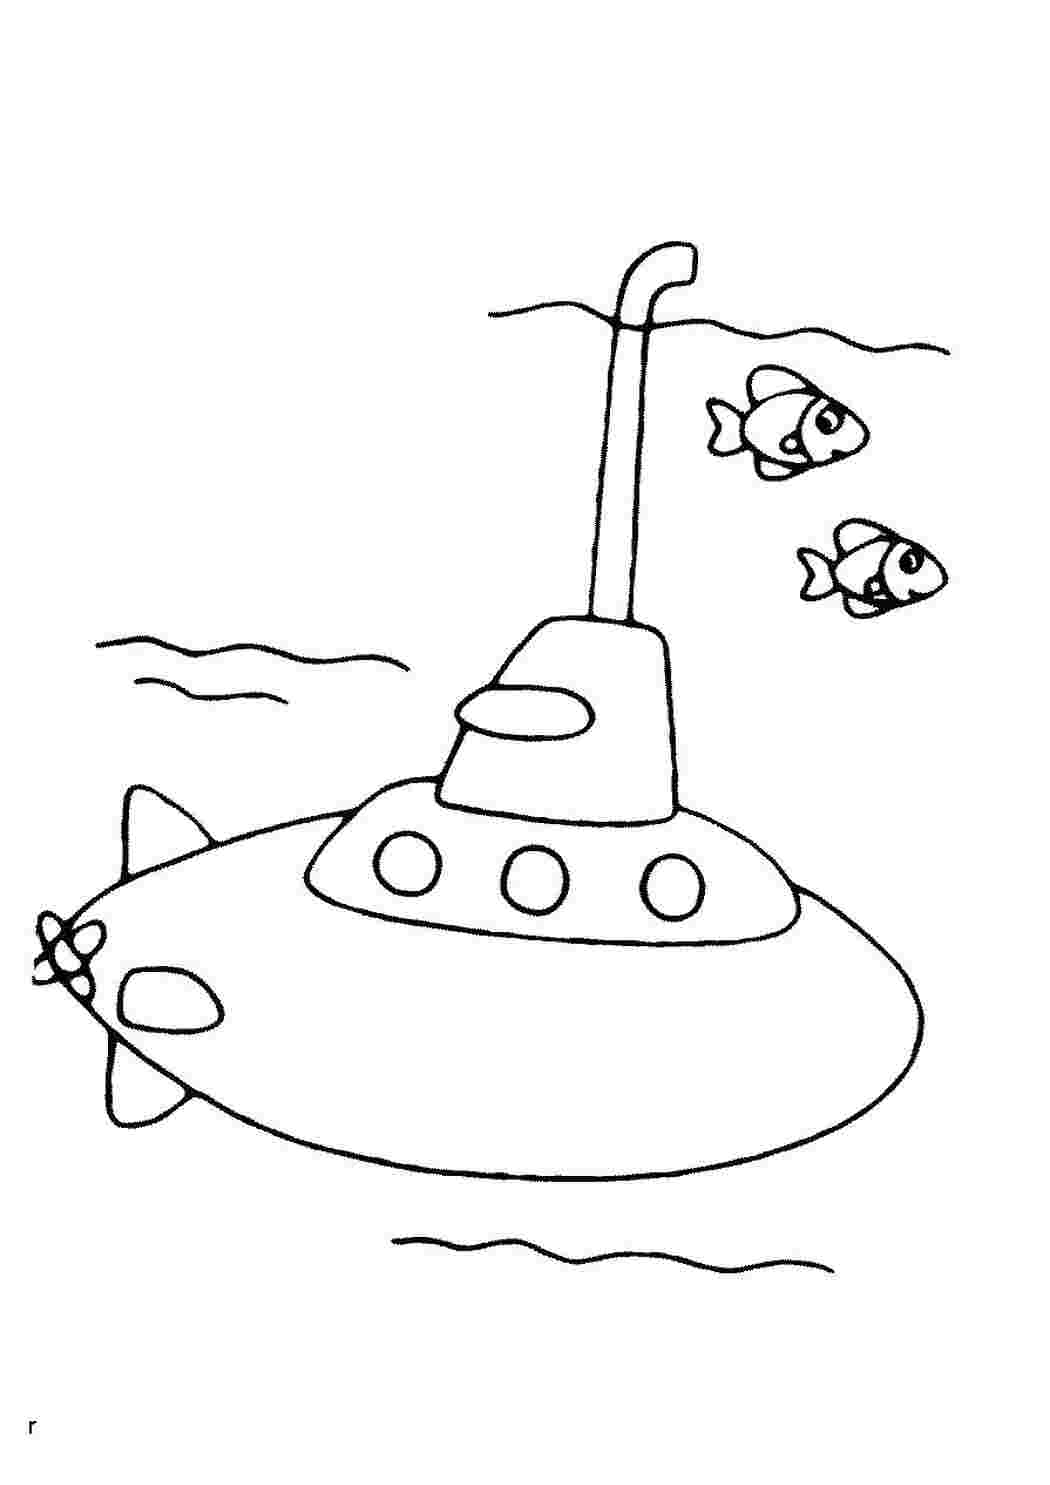 Раскраски картинки на рабочий стол онлайн Подводная лодка и рыбки Скачать раскраски для мальчиков